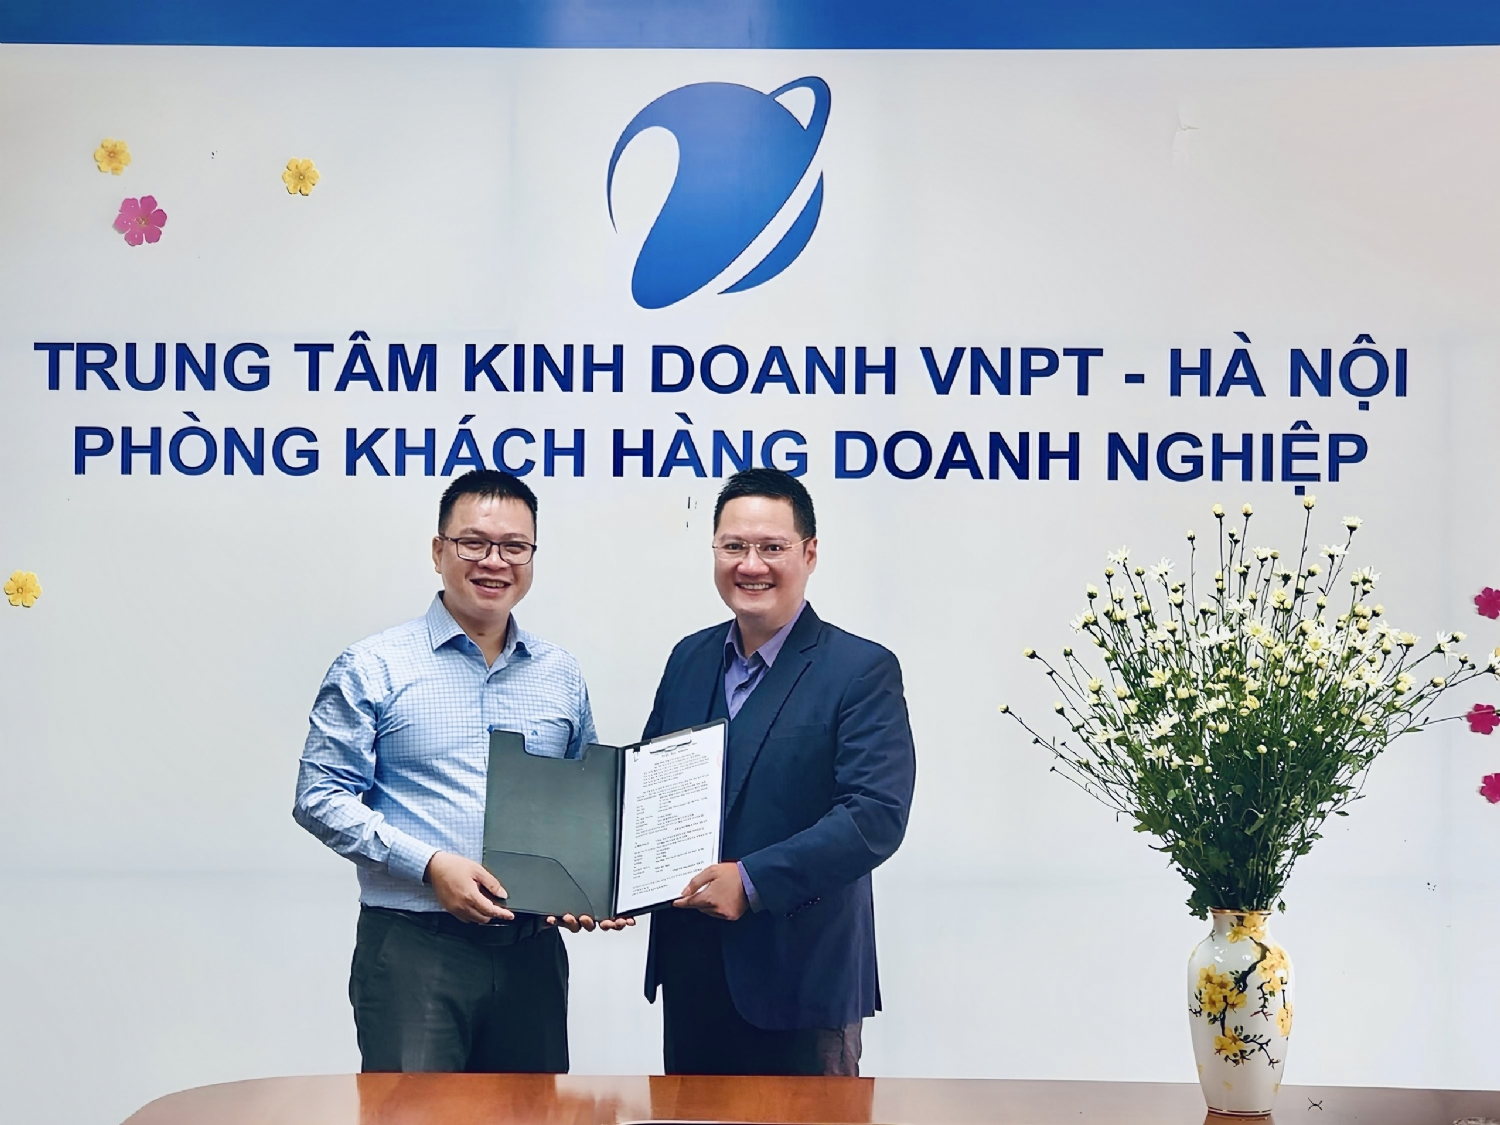 Trung tâm kinh doanh VNPT Hà Nội và LTC-Net ký kết đại lý cung cấp dịch vụ viễn thông và CNTT